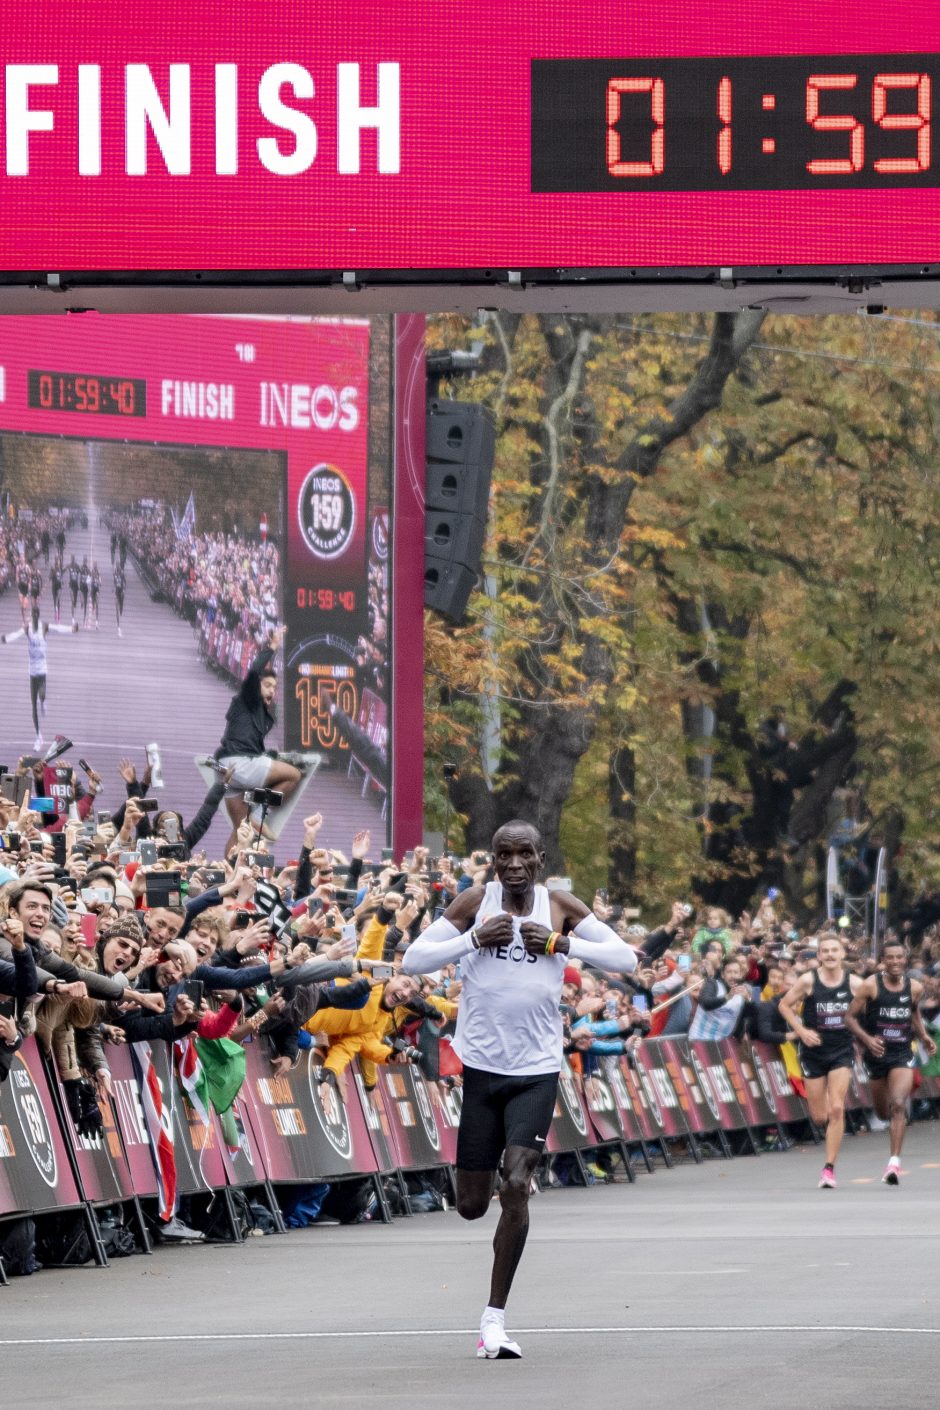 Naujos žmogaus galimybių ribos – bėgikas maratoną įveikė greičiau nei per 2 val.